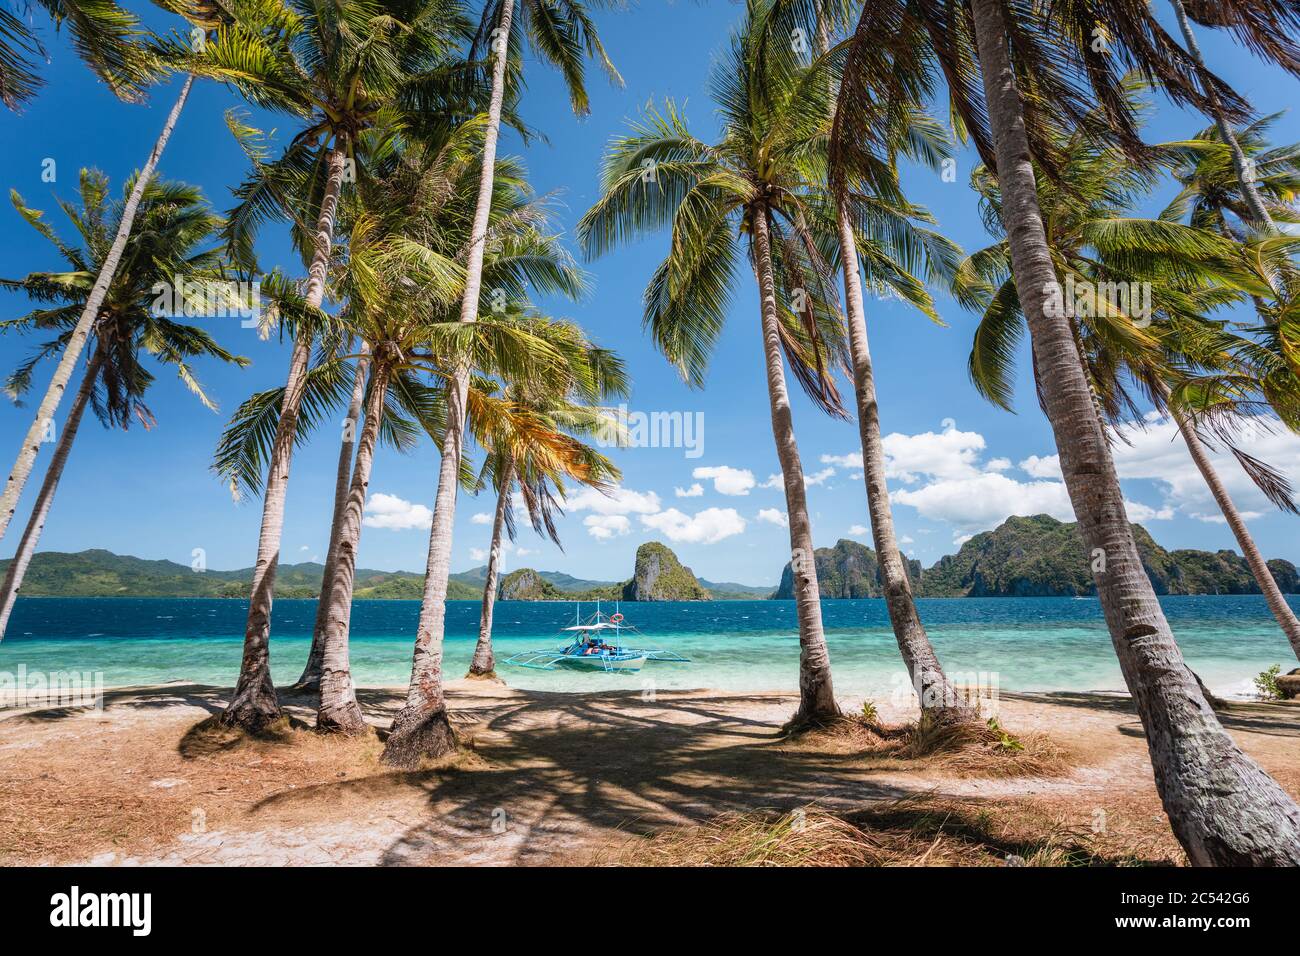 El Nido, Palawan, Philippinen. Palmen am Strand, Touristenboot filippino banca in der türkisfarbenen Lagune des Ozeans. Insel-Hopping-Tour mit wunderschönem T Stockfoto